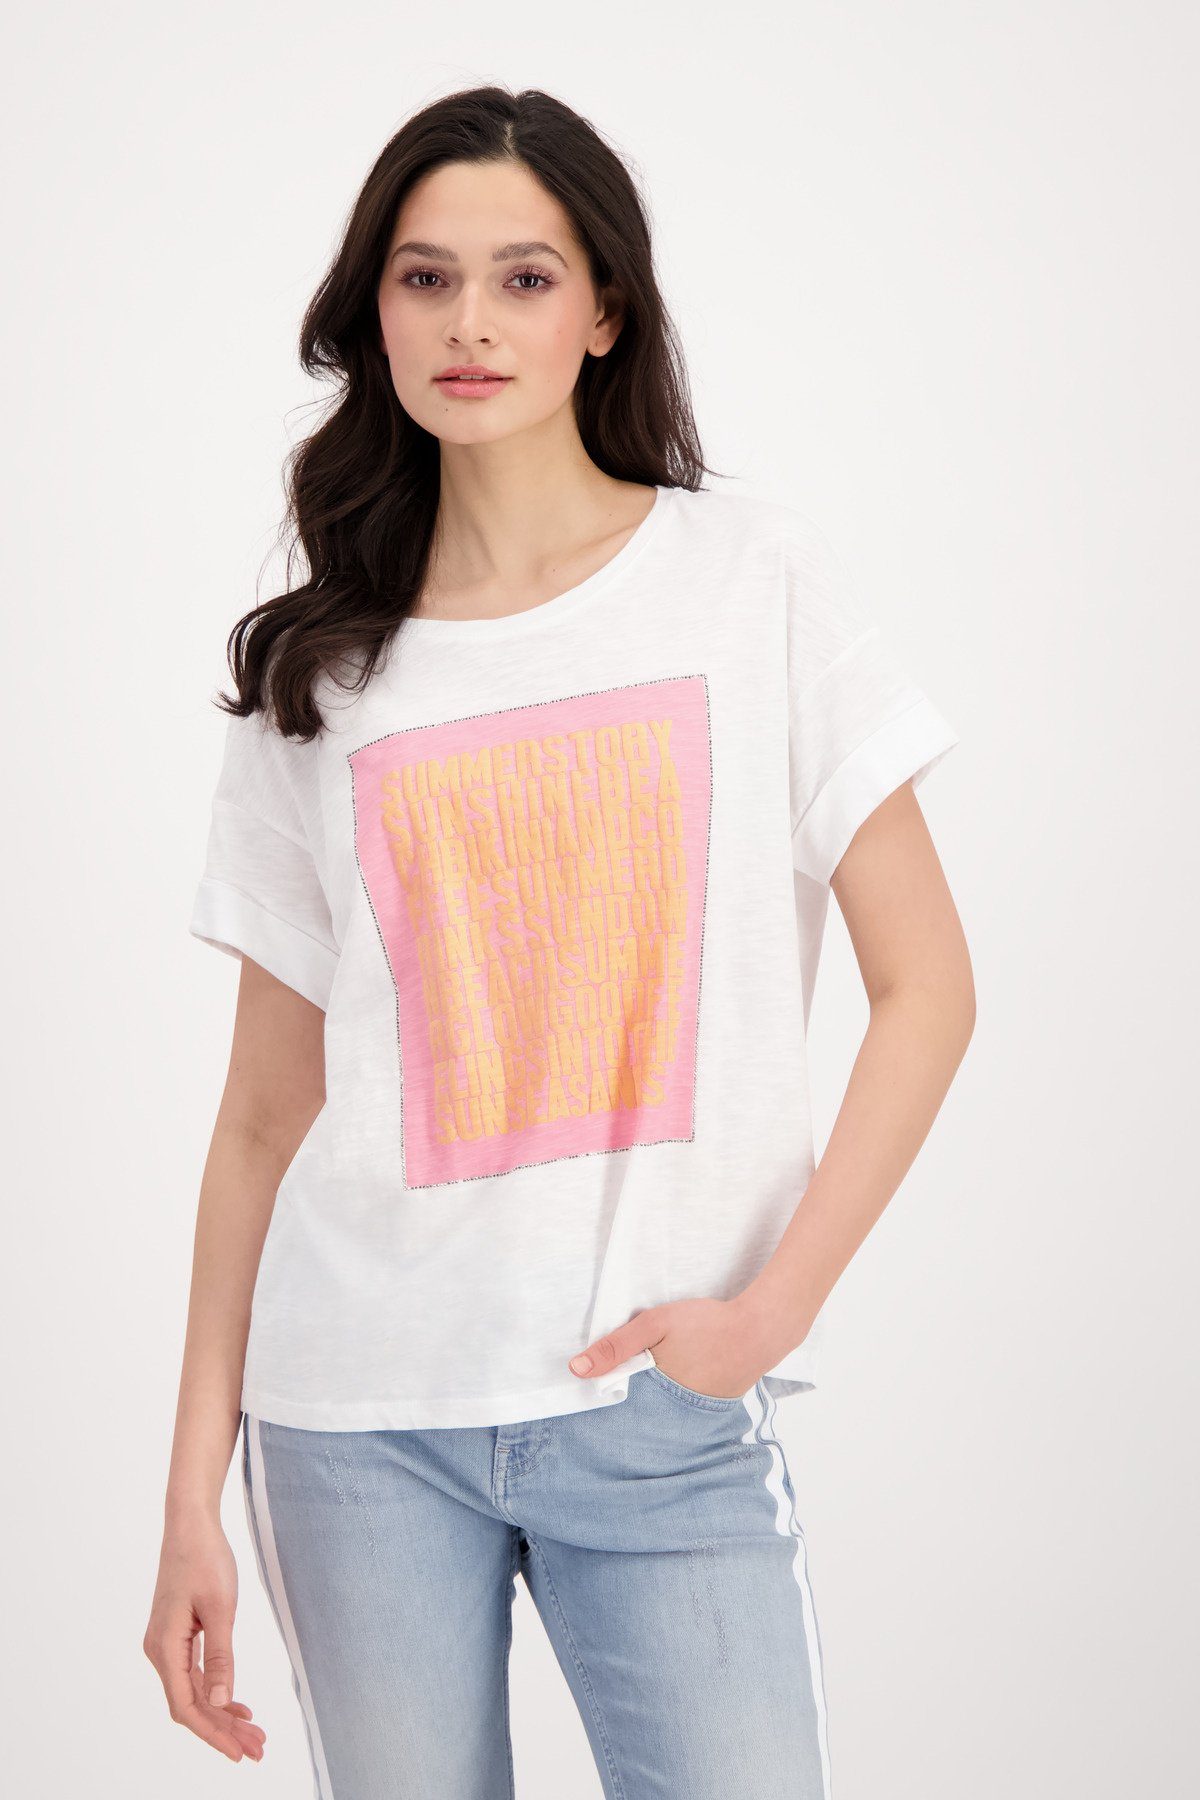 Monari T-Shirt Flammgarn Shirt mit 3D Schrift